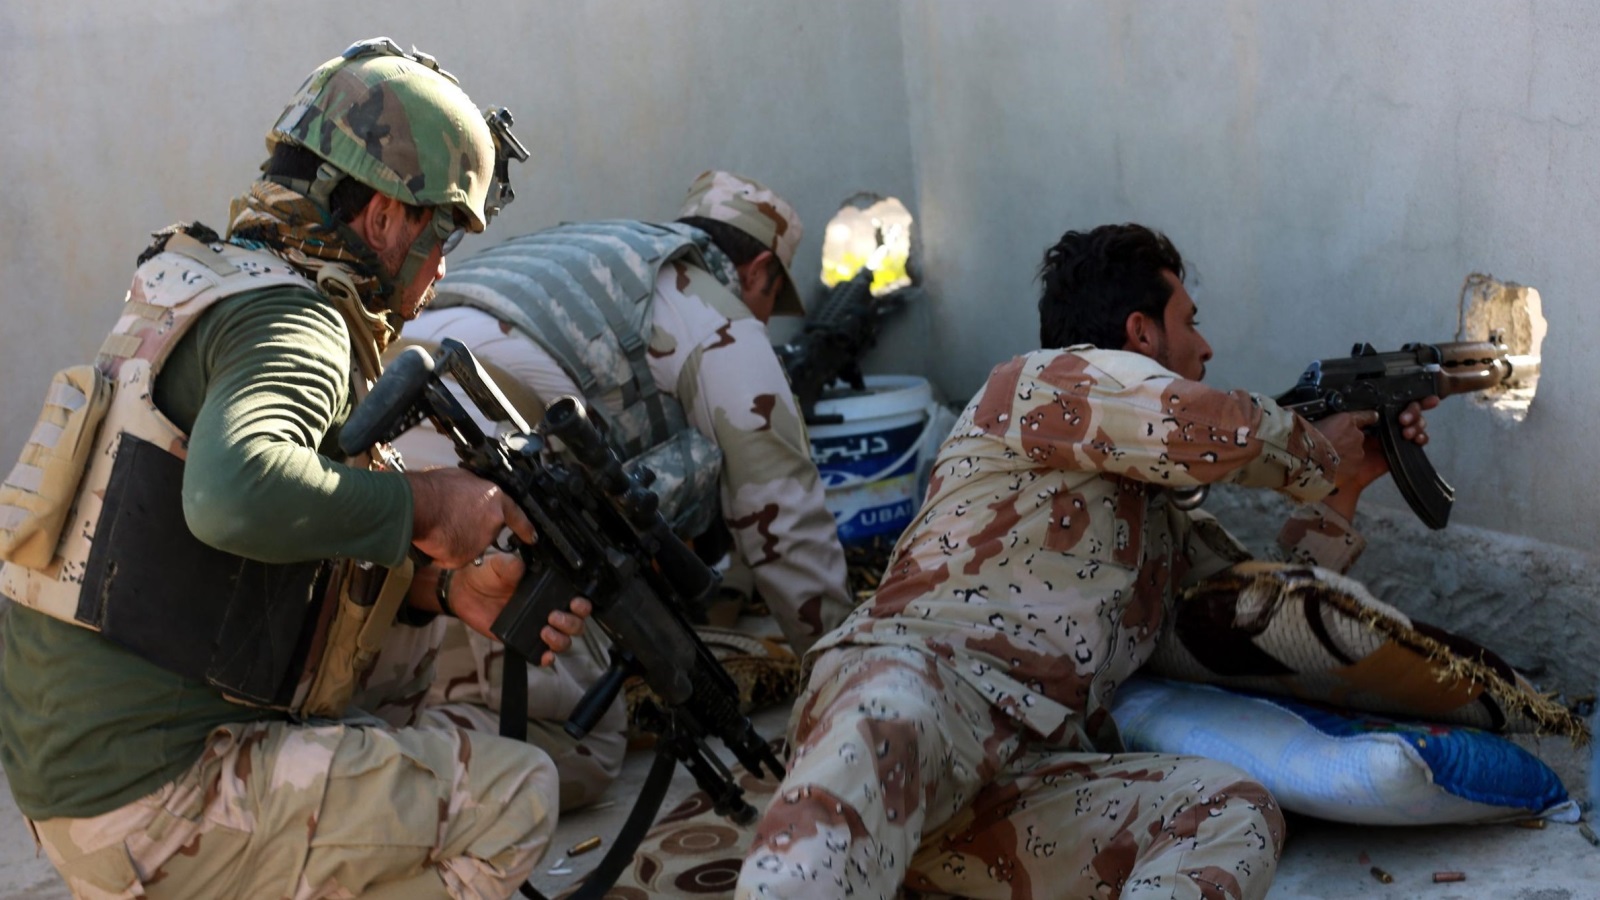 ‪جنود عراقيون يطلقون النار من داخل منزل في حي الشيماء بالموصل‬ (الأوروبية)